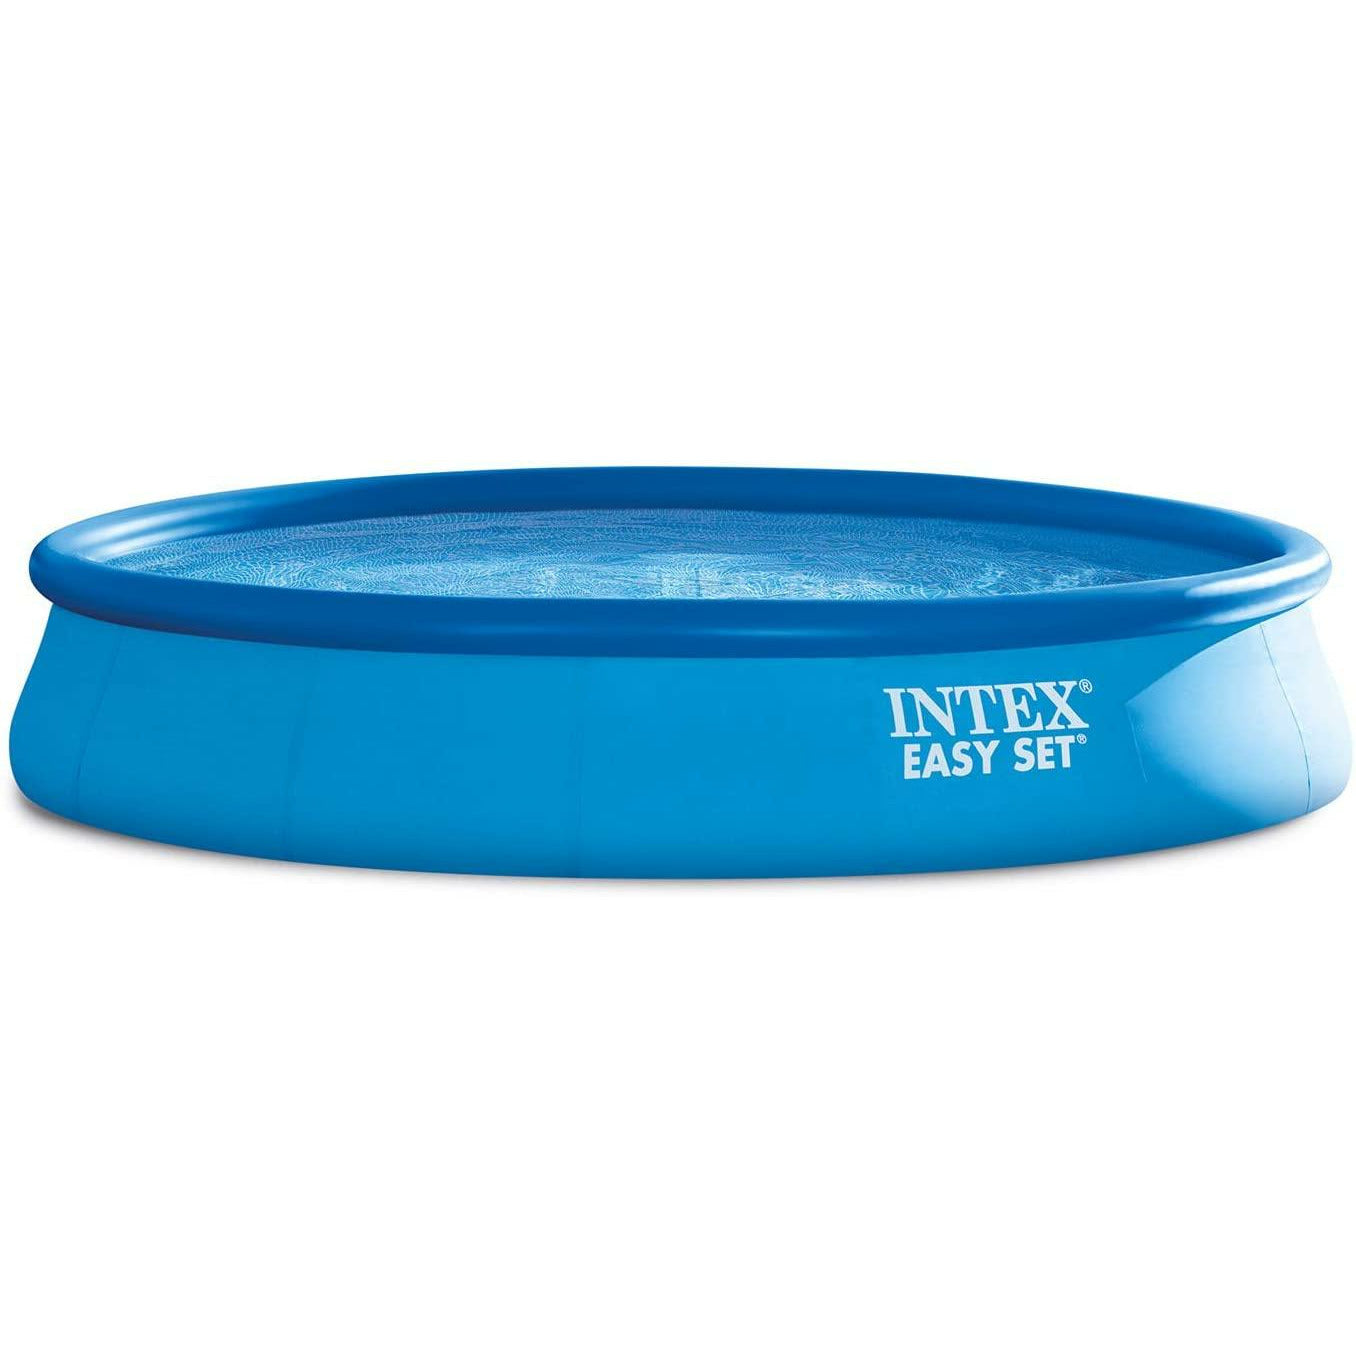 Intex Easy Set Pool 15x33 - Pelican Shops